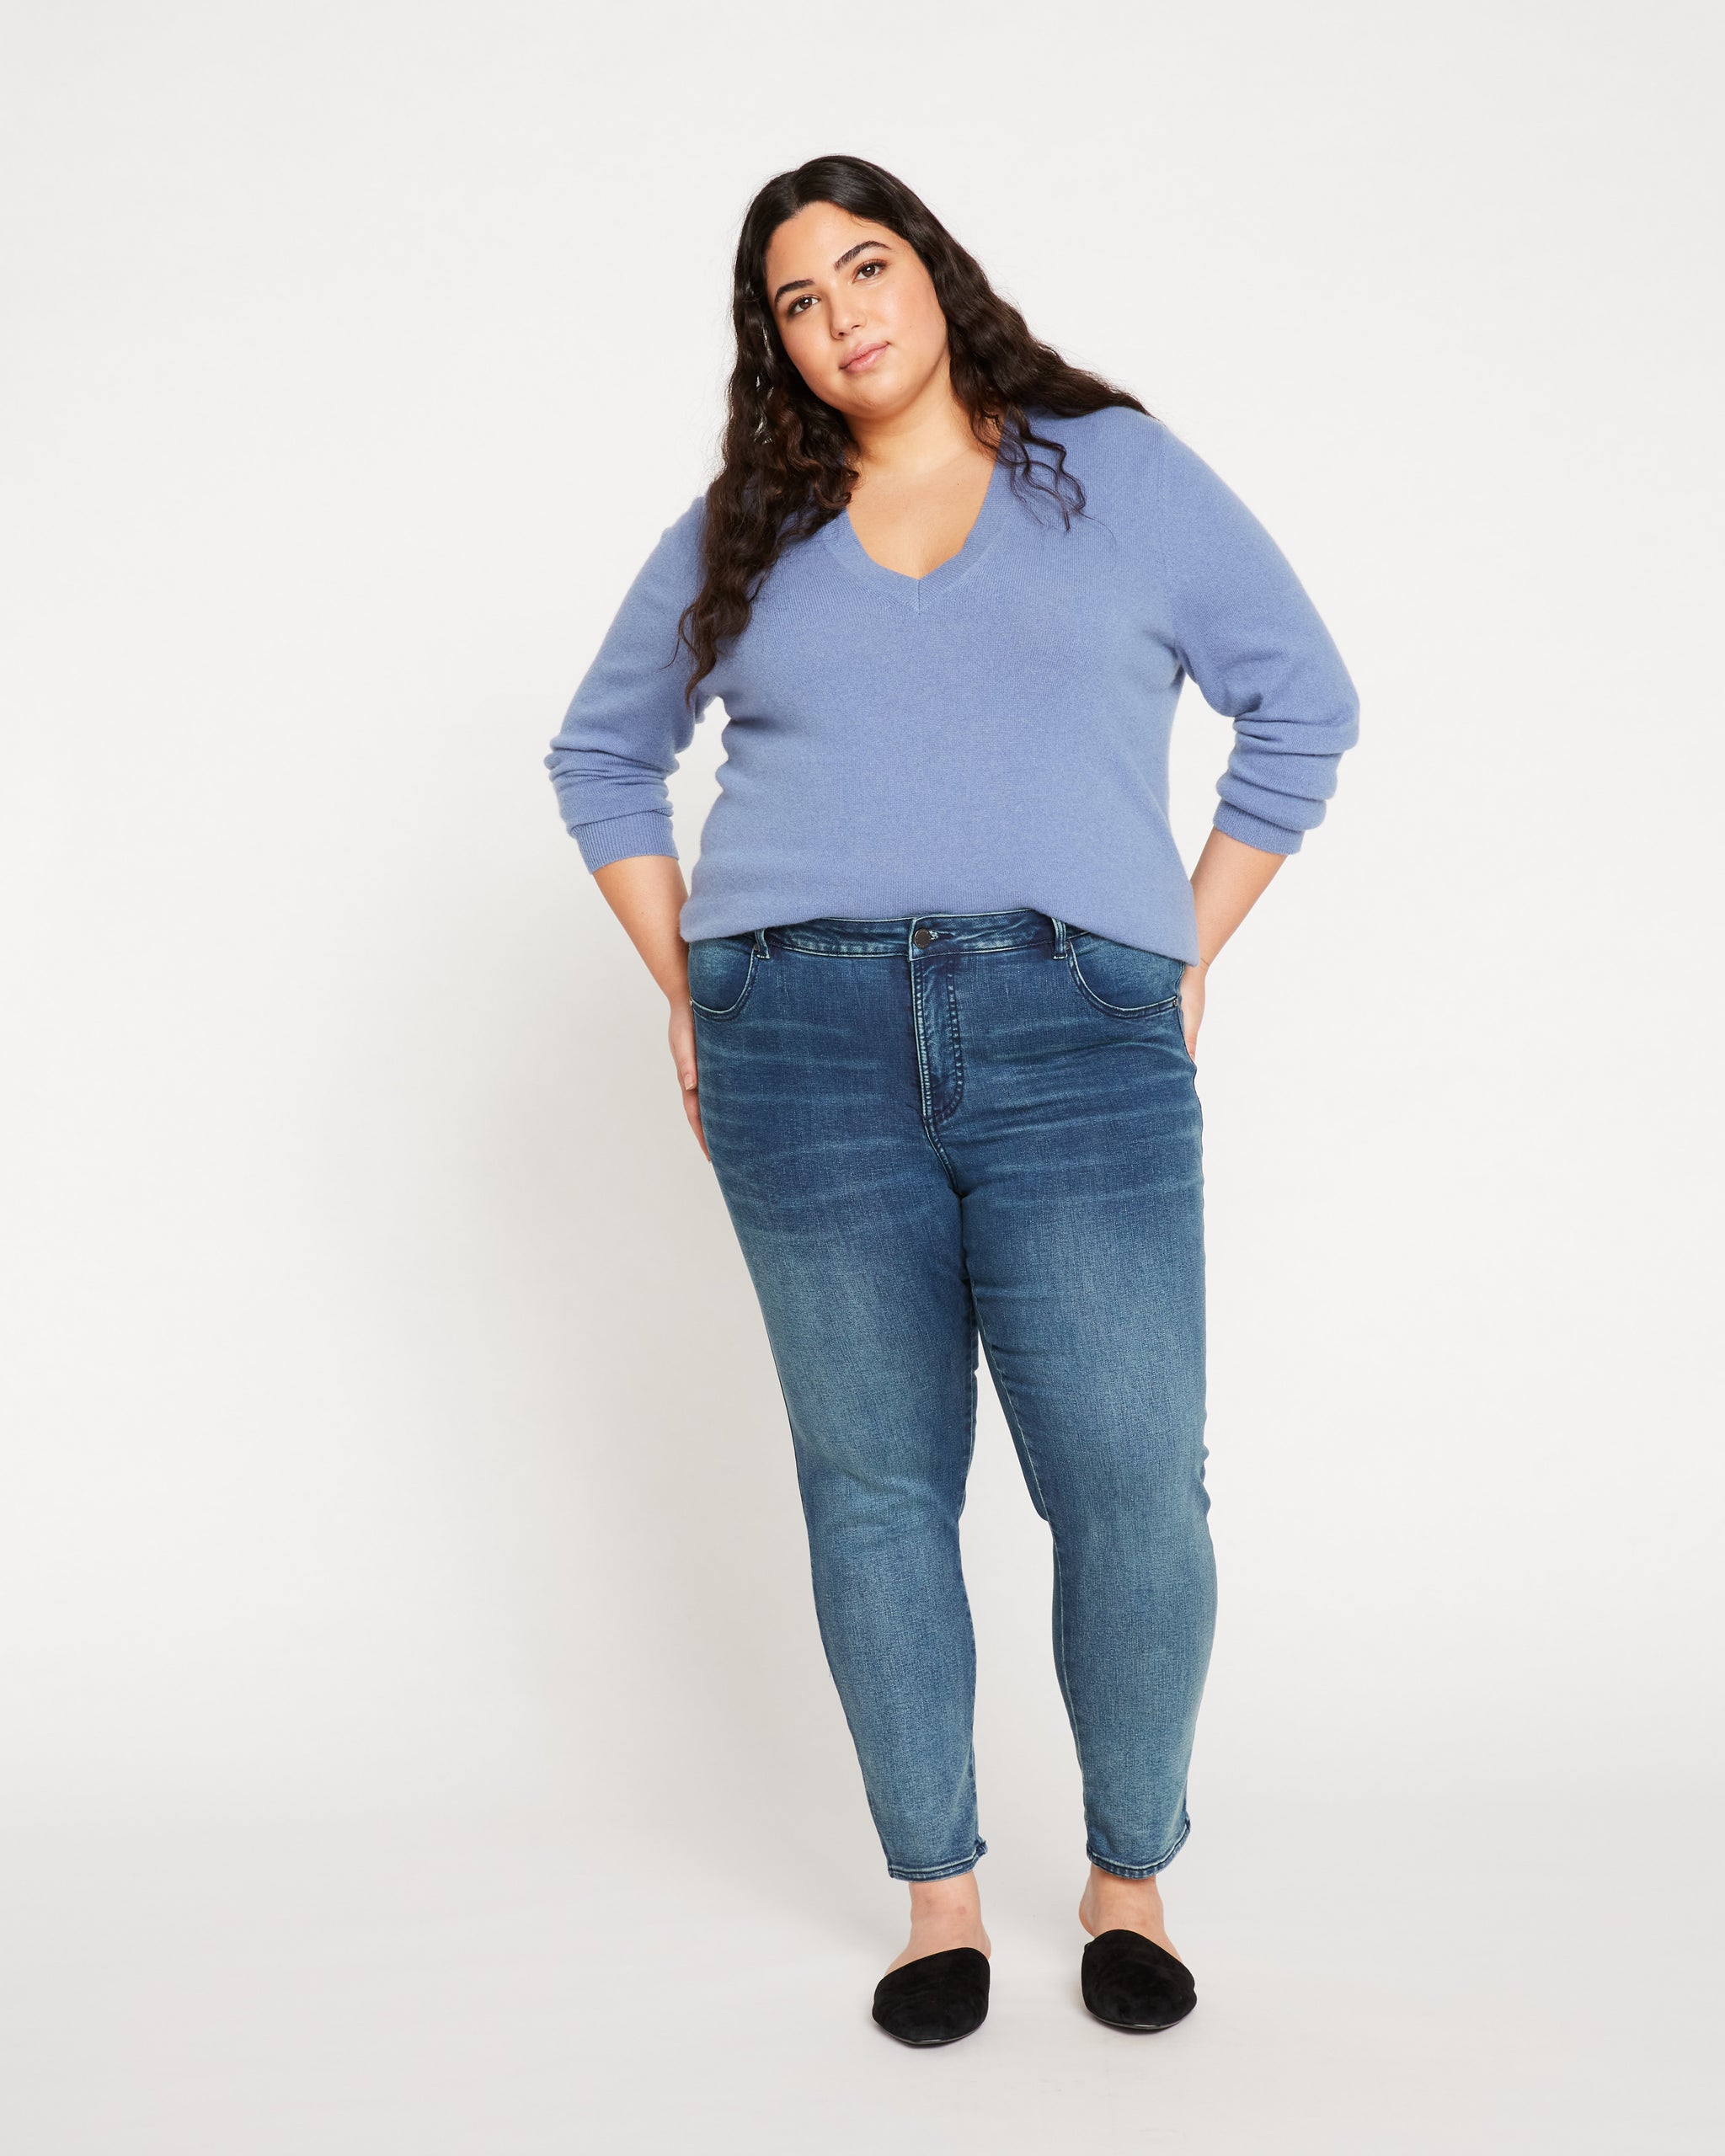 K.O.R Premium Womens Plus Size Stretch Blue Skinny Denim Jeans